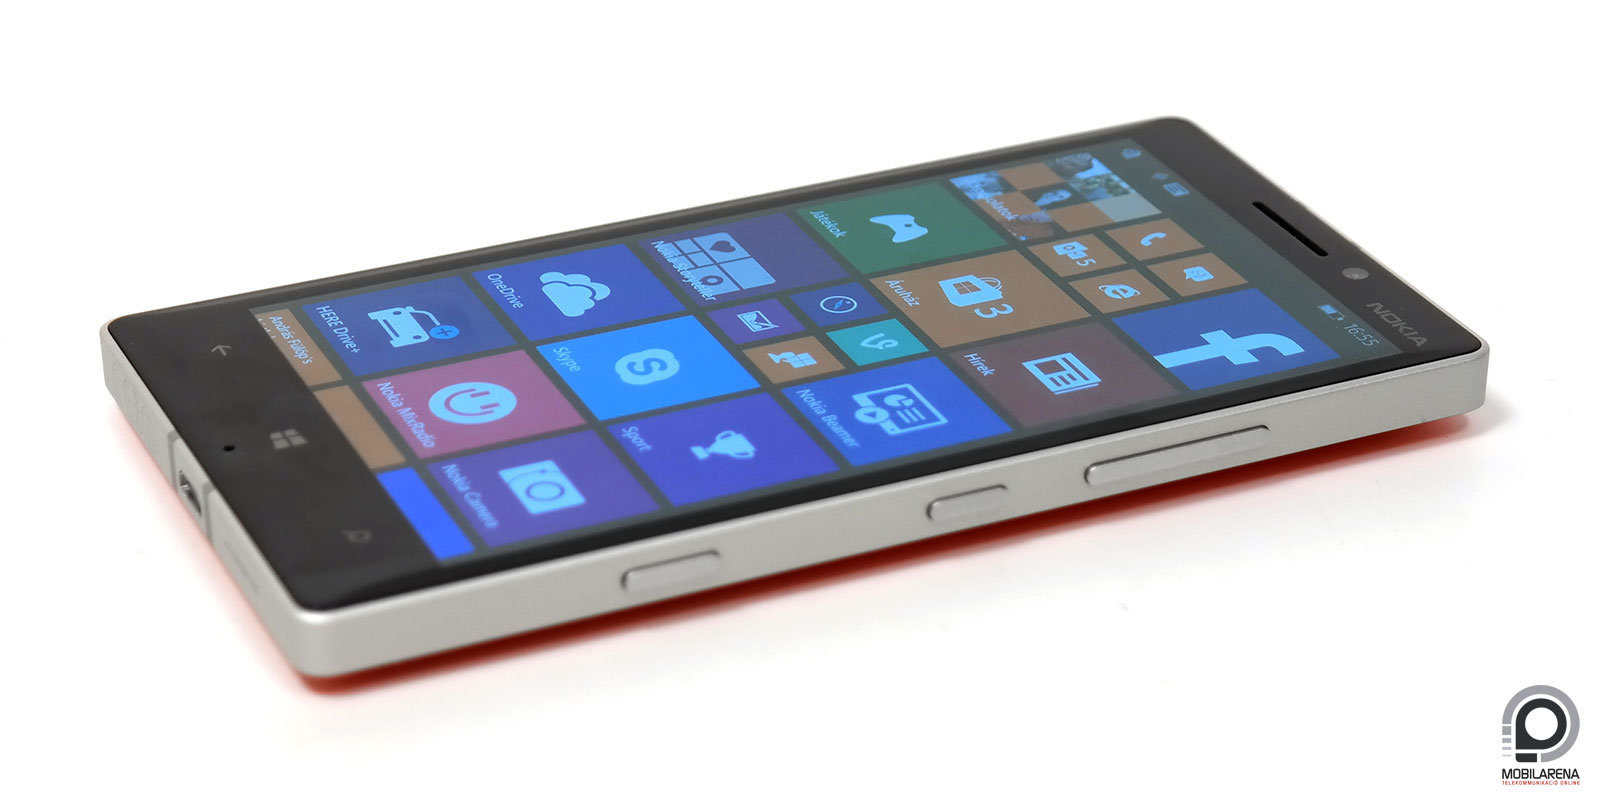 Elindult a végleges Windows 10 frissítés a korábbi készülékekre -  Mobilarena Okostelefon hír